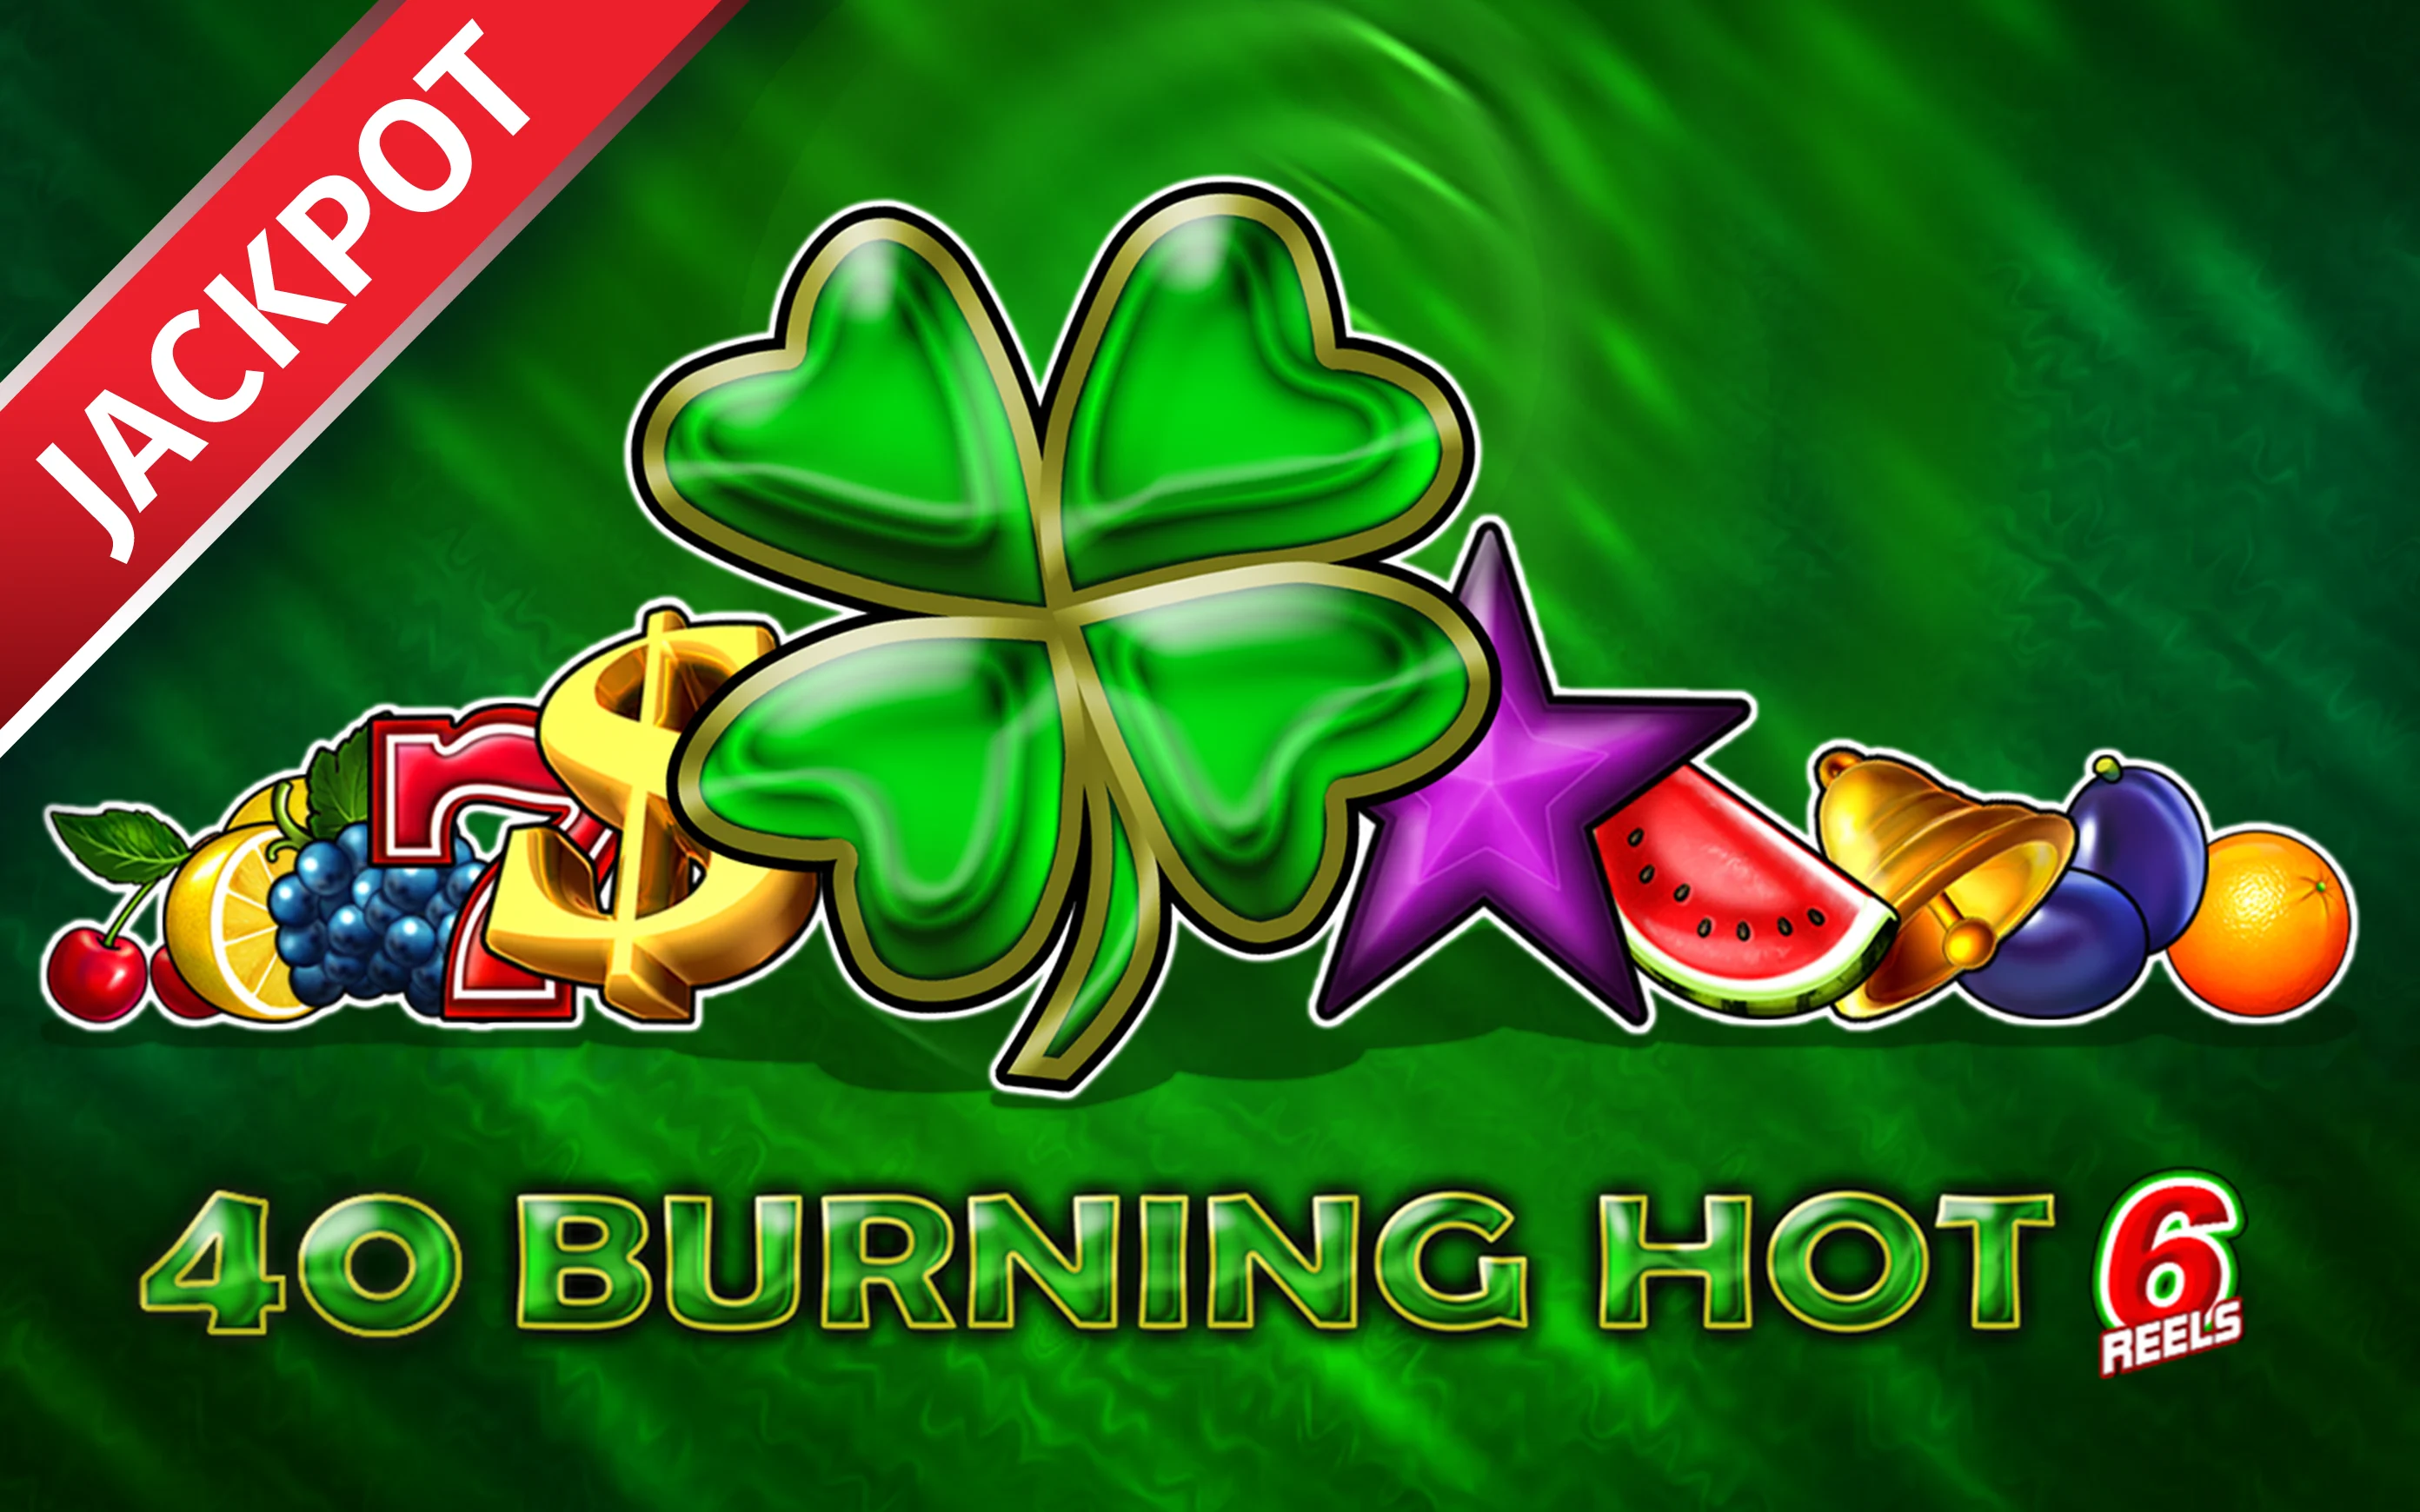 Zagraj w 40 Burning Hot 6 Reels w kasynie online Starcasino.be